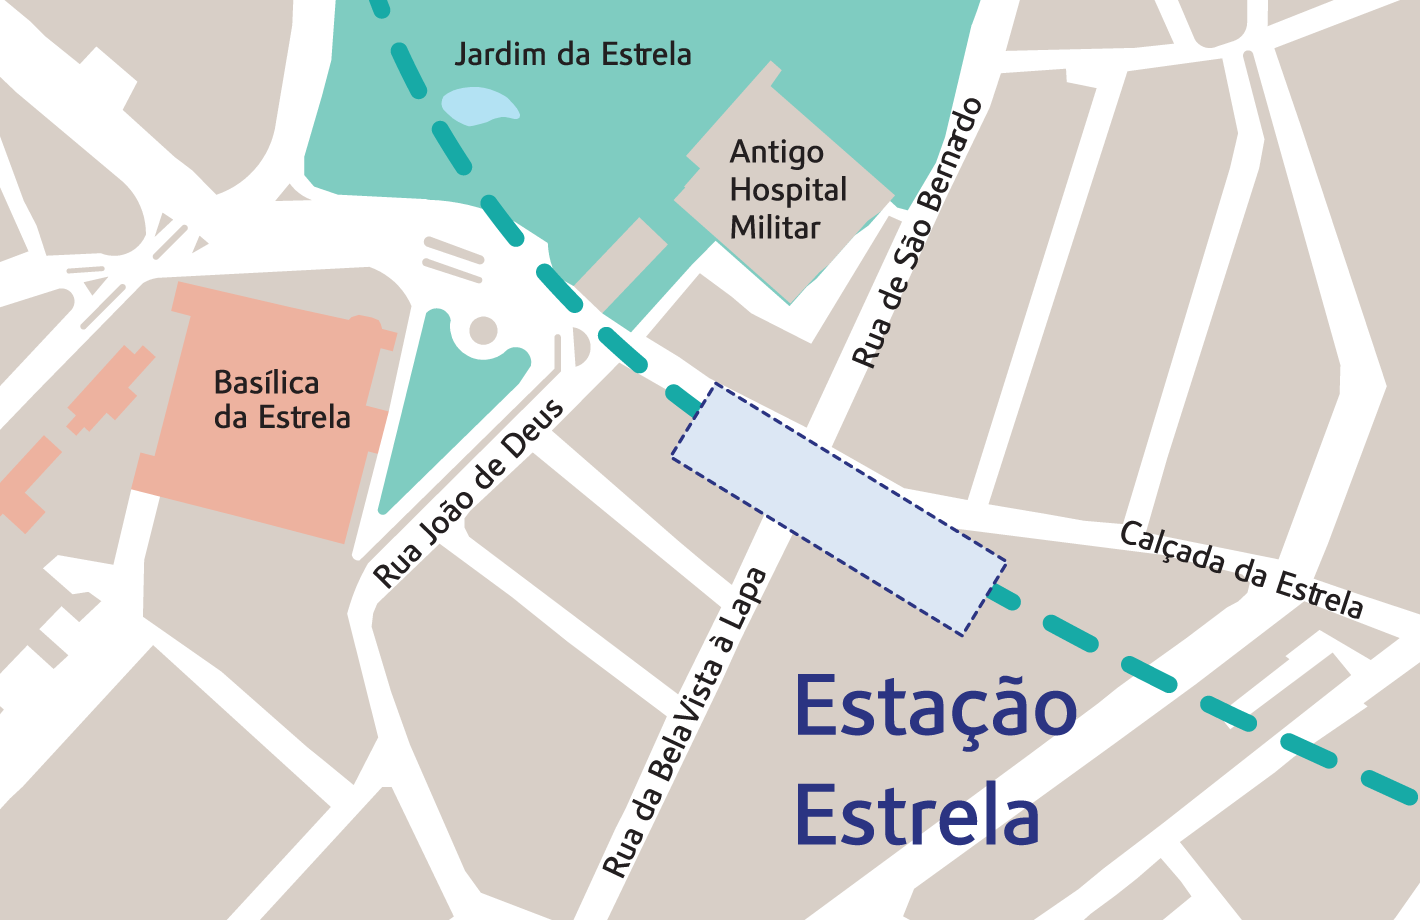 Diagrama da localização da futura estação Estrela. A futura estação ficará localizada na Calçada da Estrela, em frente à Basílica da Estrela, com acesso na extremidade Sul do Jardim da Estrela.